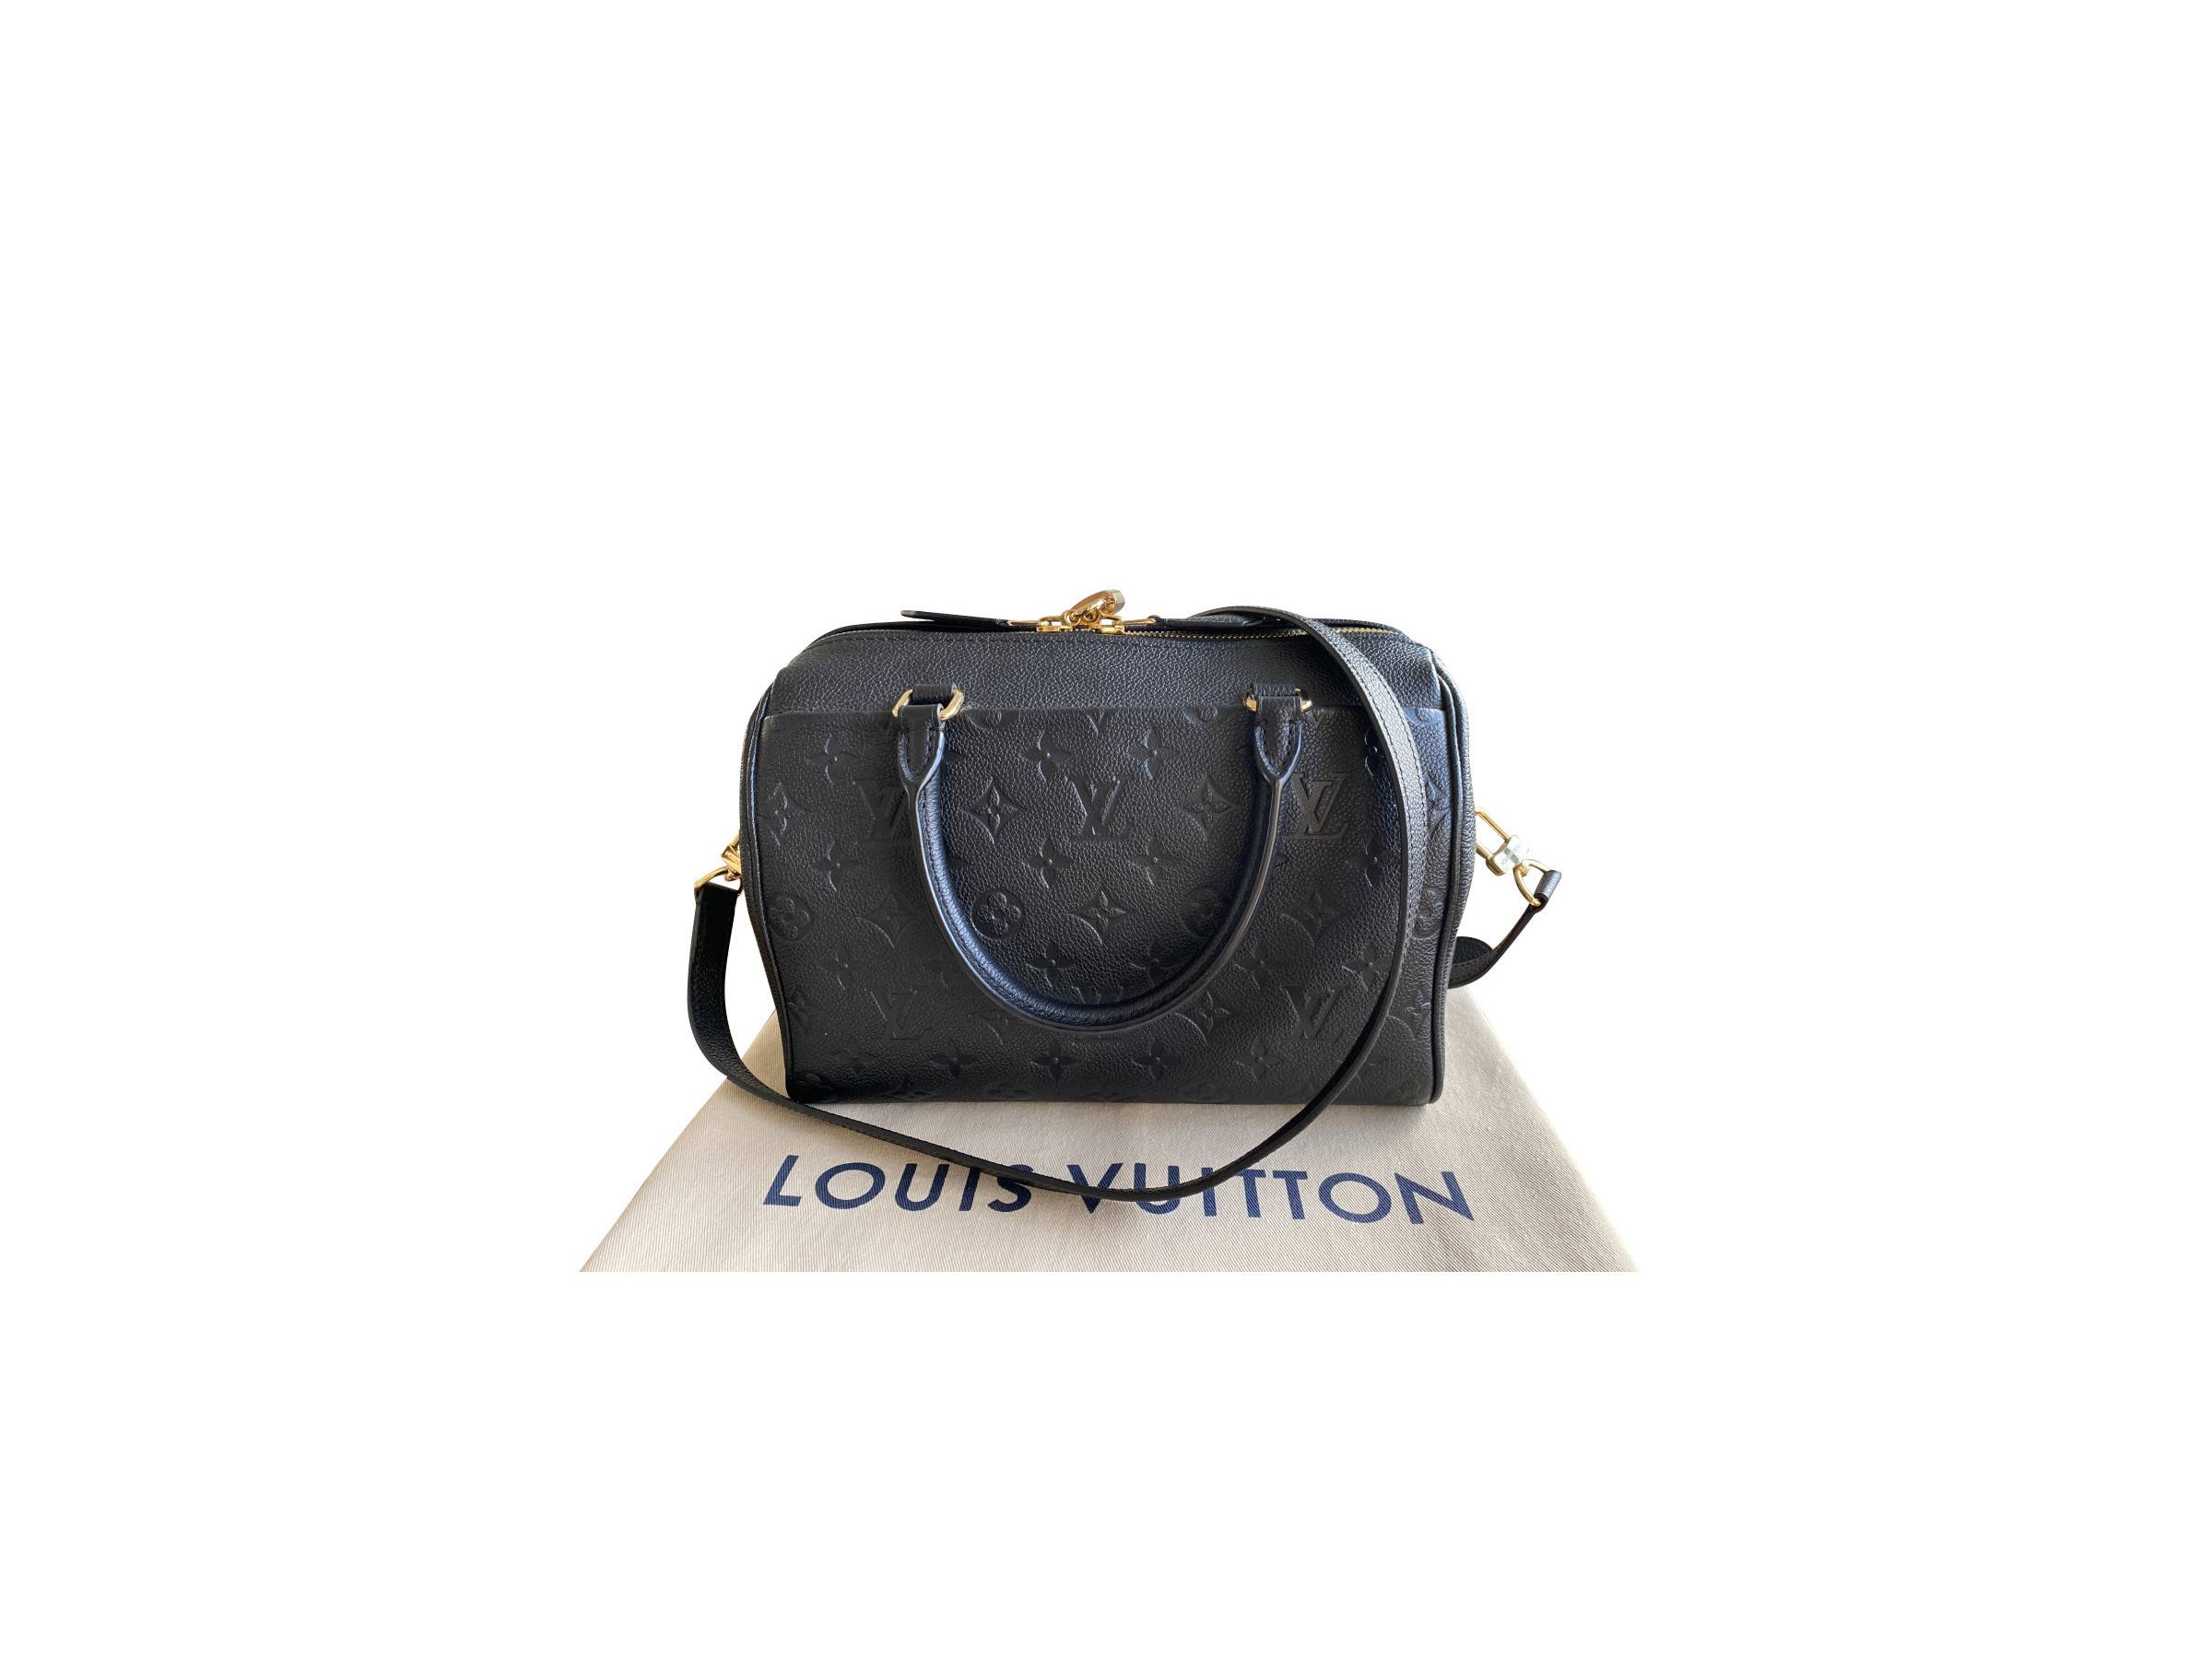 Louis Vuitton - Speedy 25 mit Schulterriemen - Monogram Empreinte